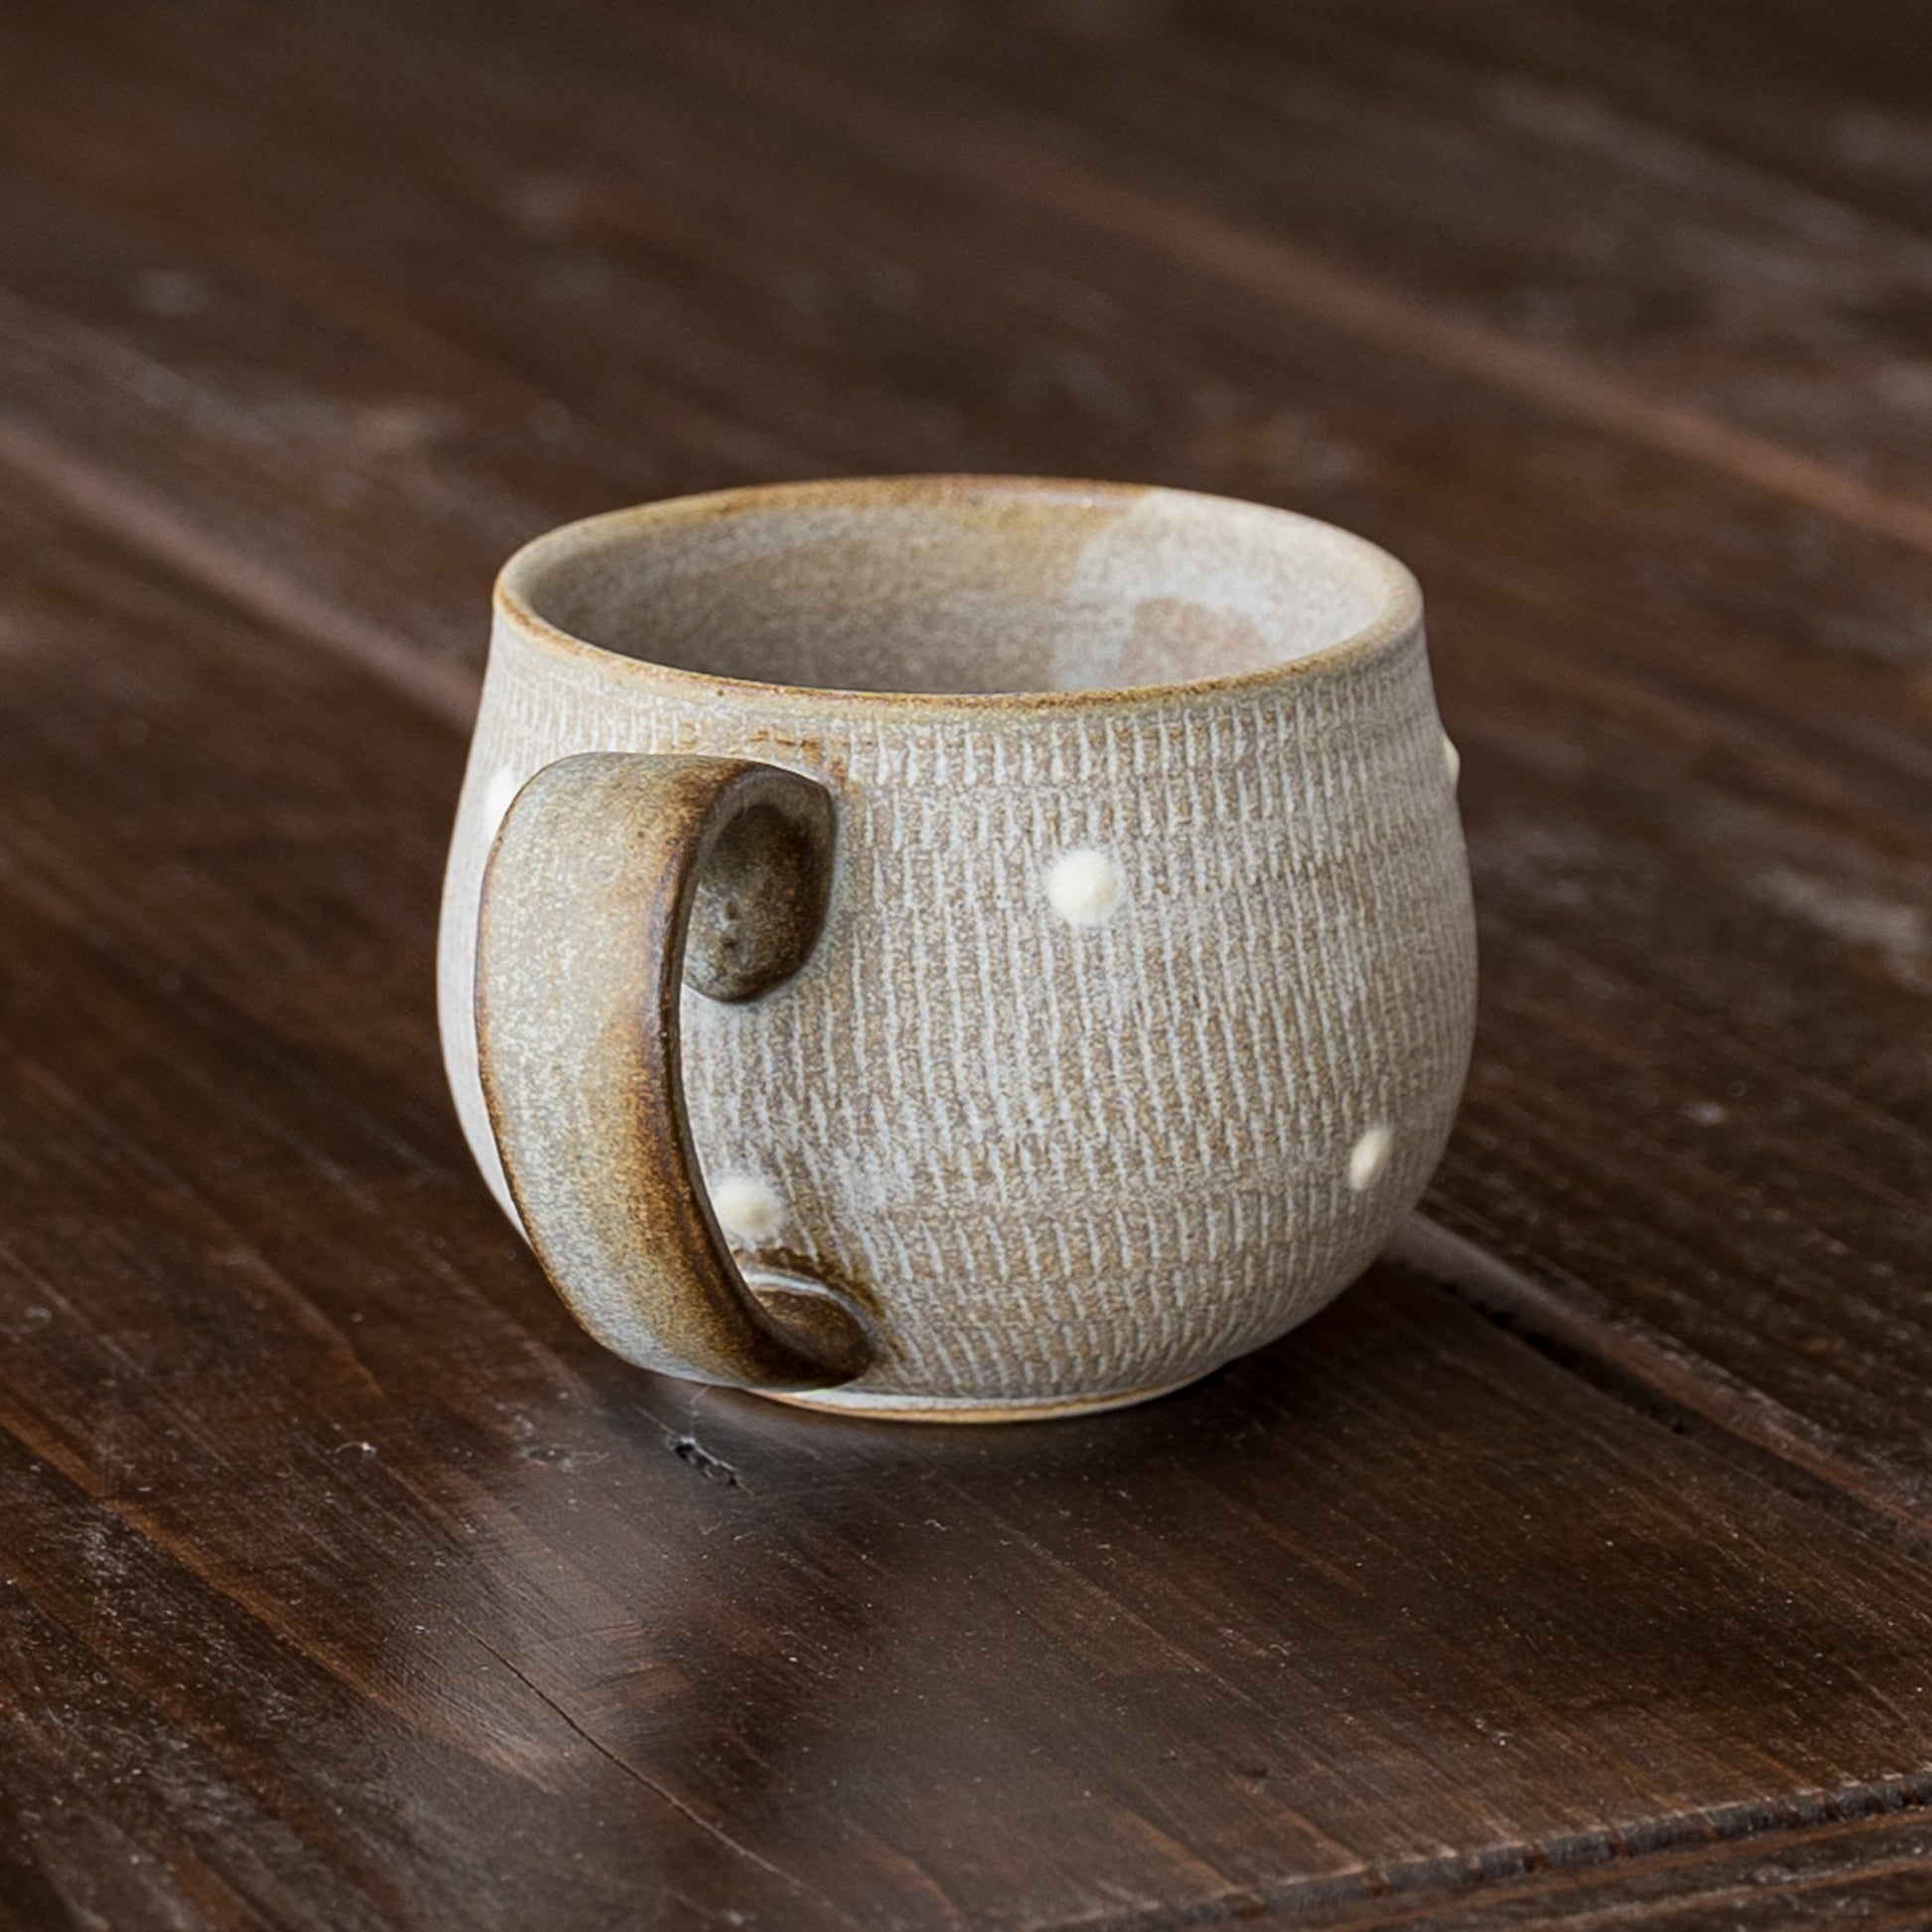 味わい深いのに可愛らしい小石原焼翁明窯元のドット柄のコーヒーカップ